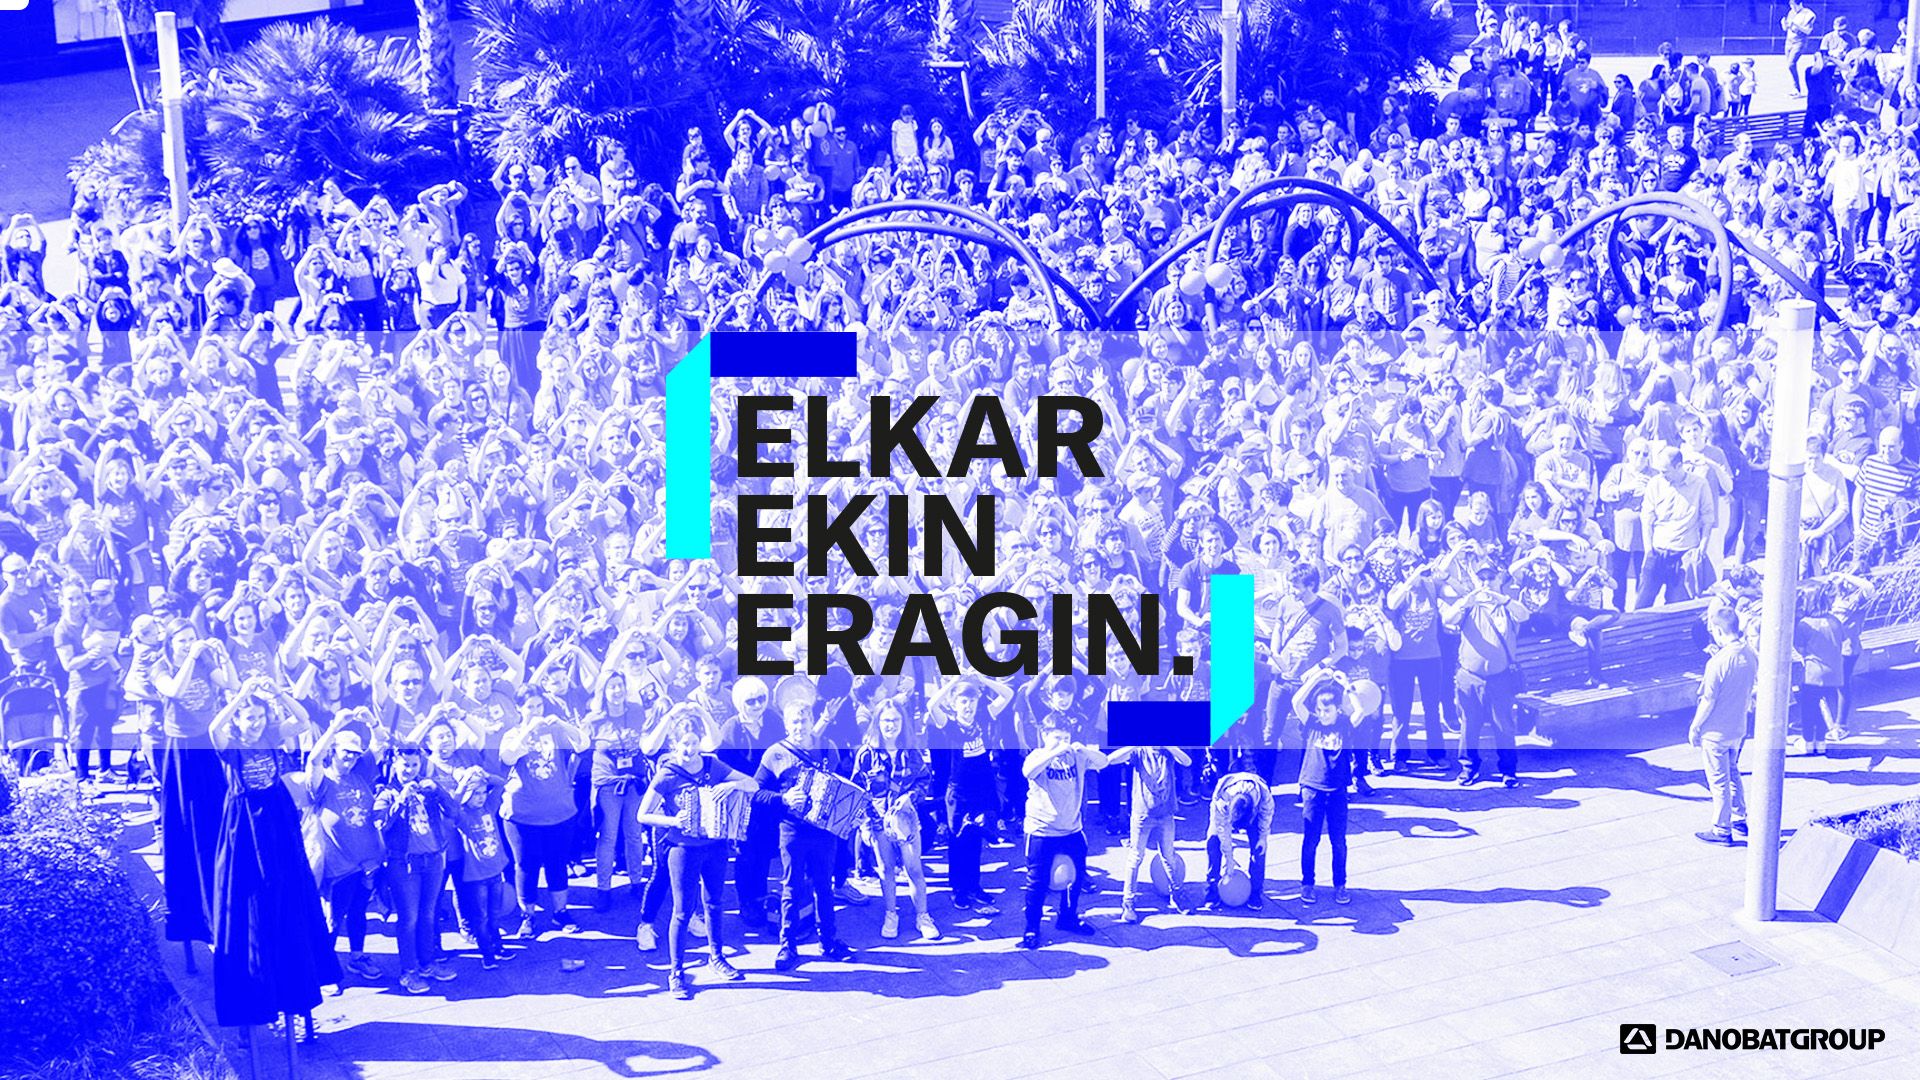 Danobatgroup allocates €600,000 to its social cooperation programme "Elkarrekin Eragin"